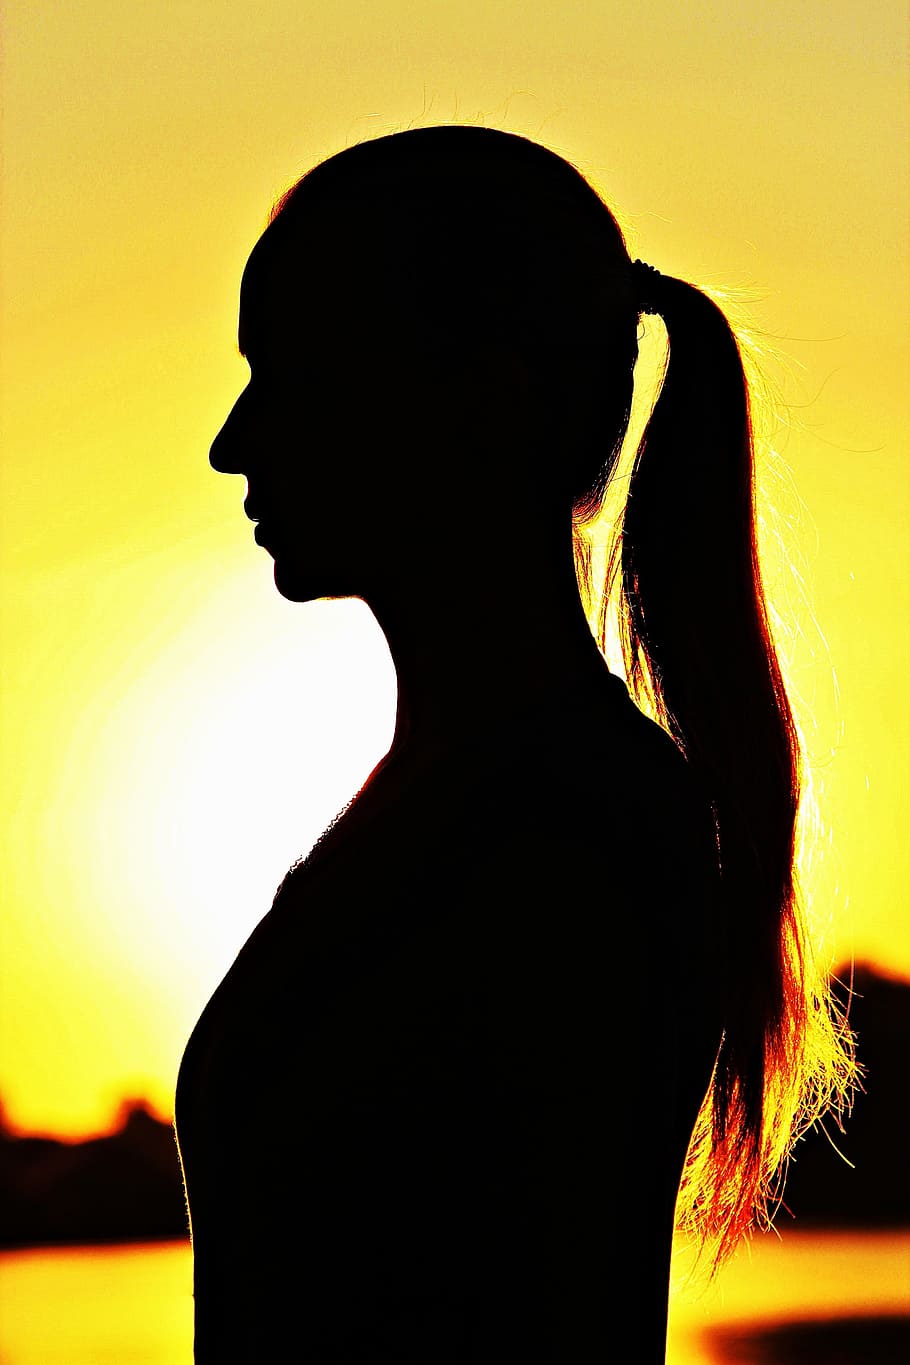 Silueta, Imagen de sombra, Mujer, Trenza, amanecer, una sola mujer, solo mujeres, amarillo, vista lateral, una persona